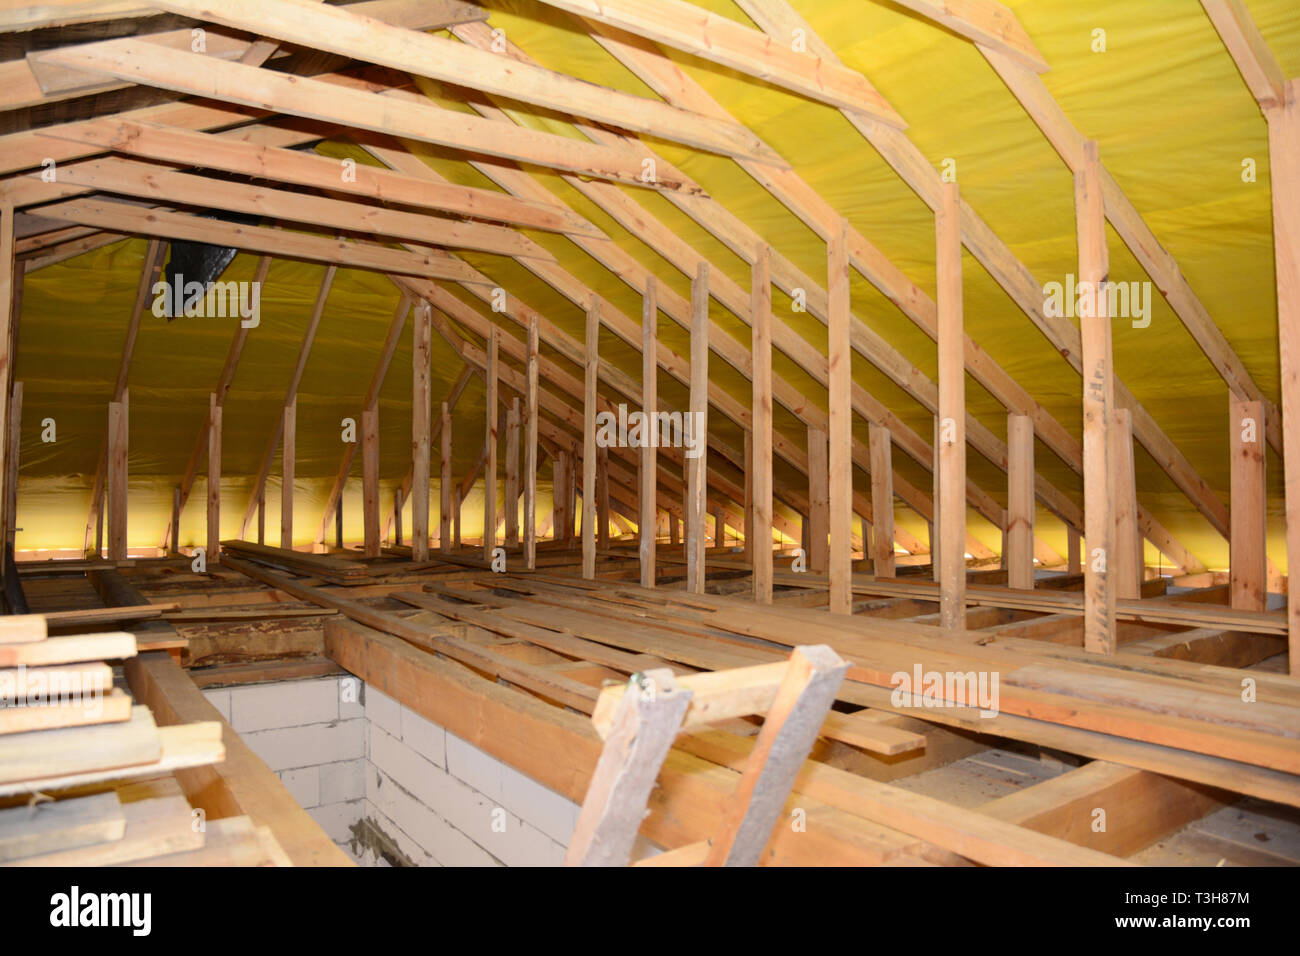 La construction de la toiture de l'intérieur. Toit en bois poutres apparentes, cadre en bois, de chevrons, fermes, chambre grenier Construction. Banque D'Images